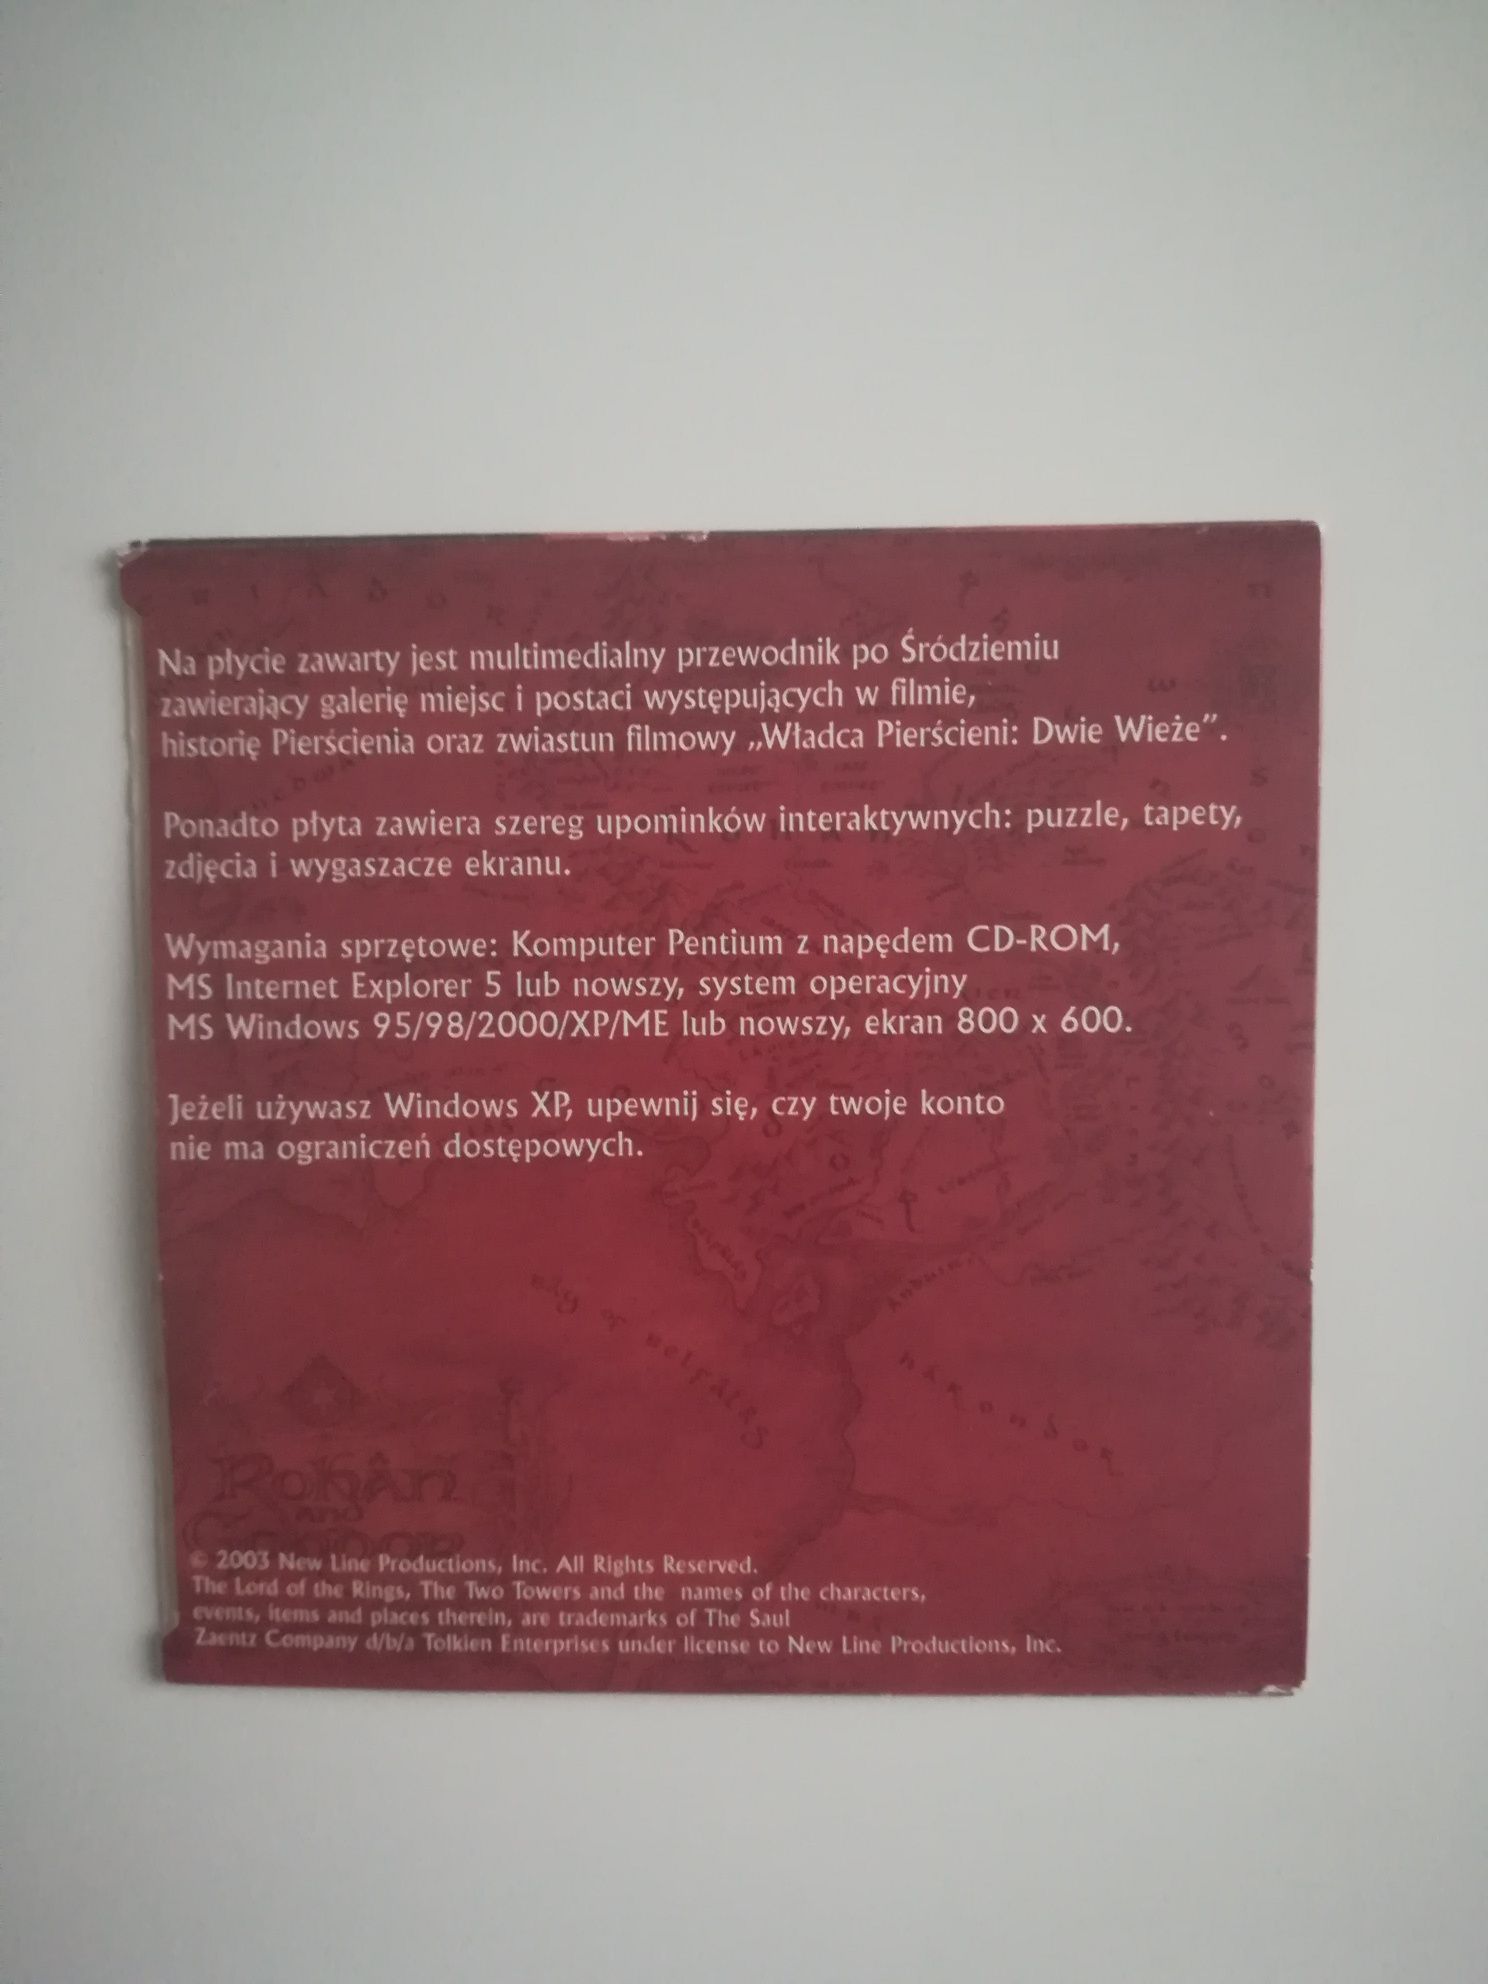 Władca Pierścieni - Dwie Wieże - multimedialna płyta CD